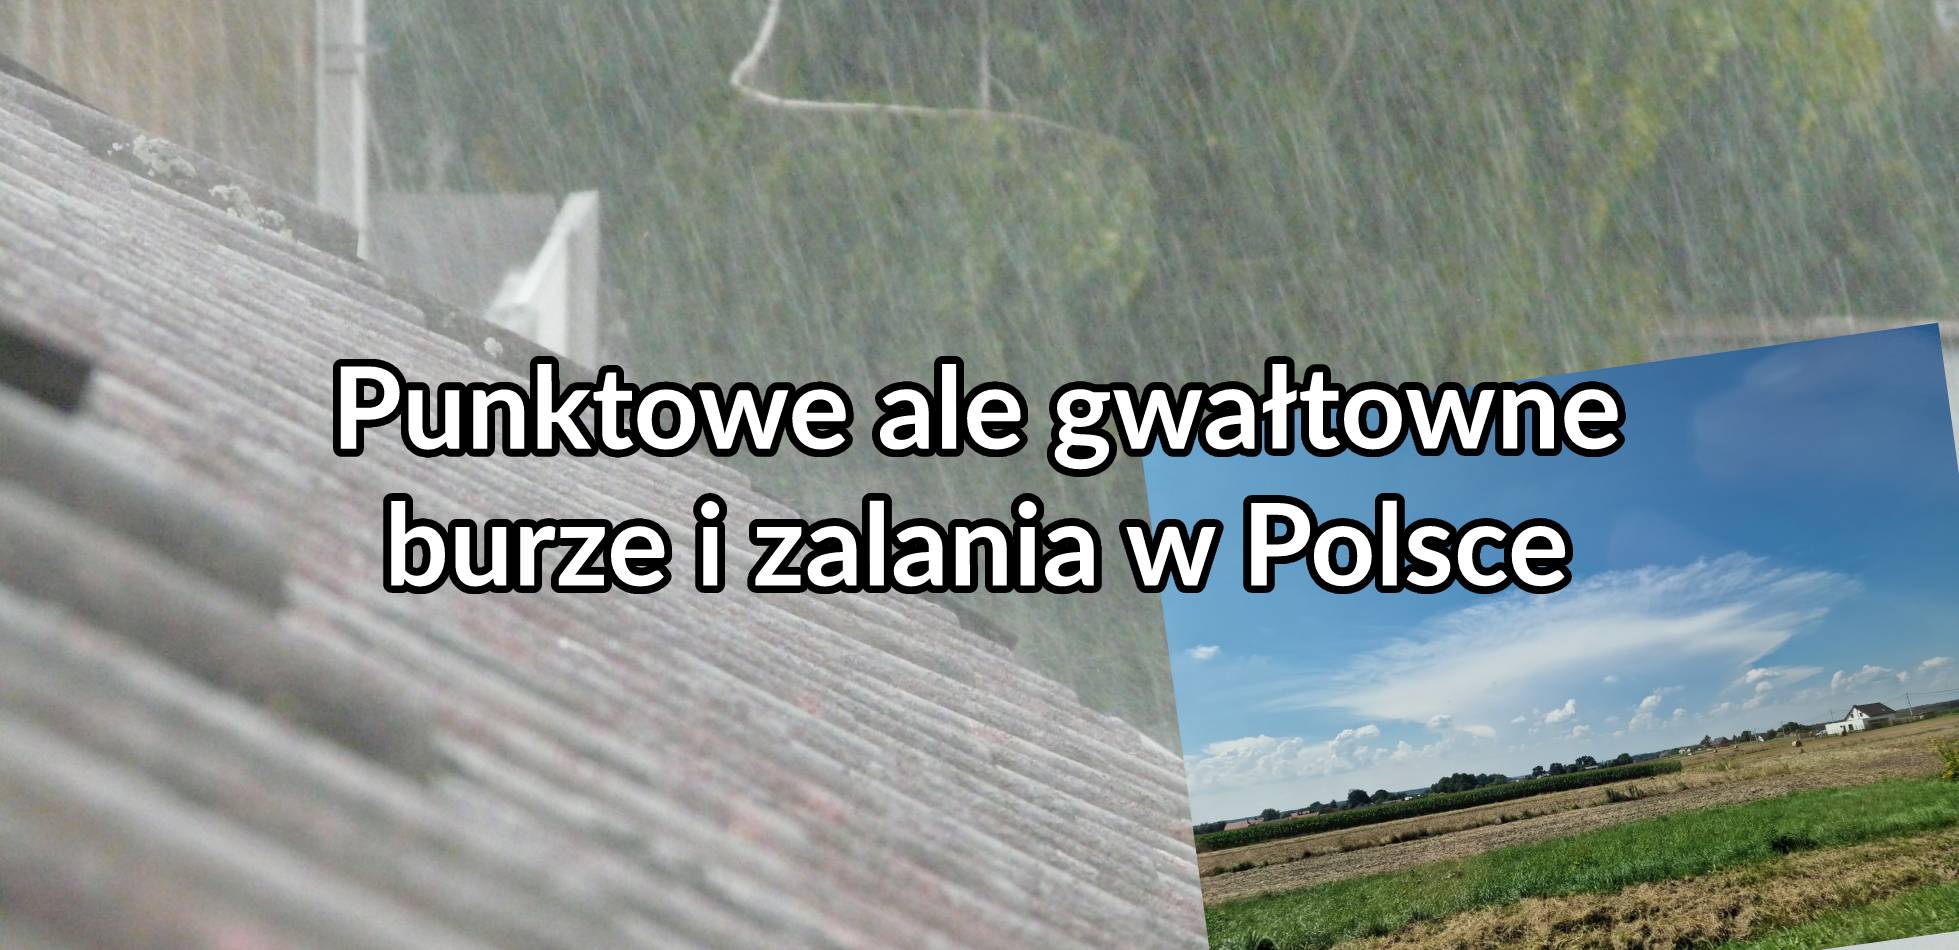 Punktowe ale gwałtowne burze i zalania w Polsce